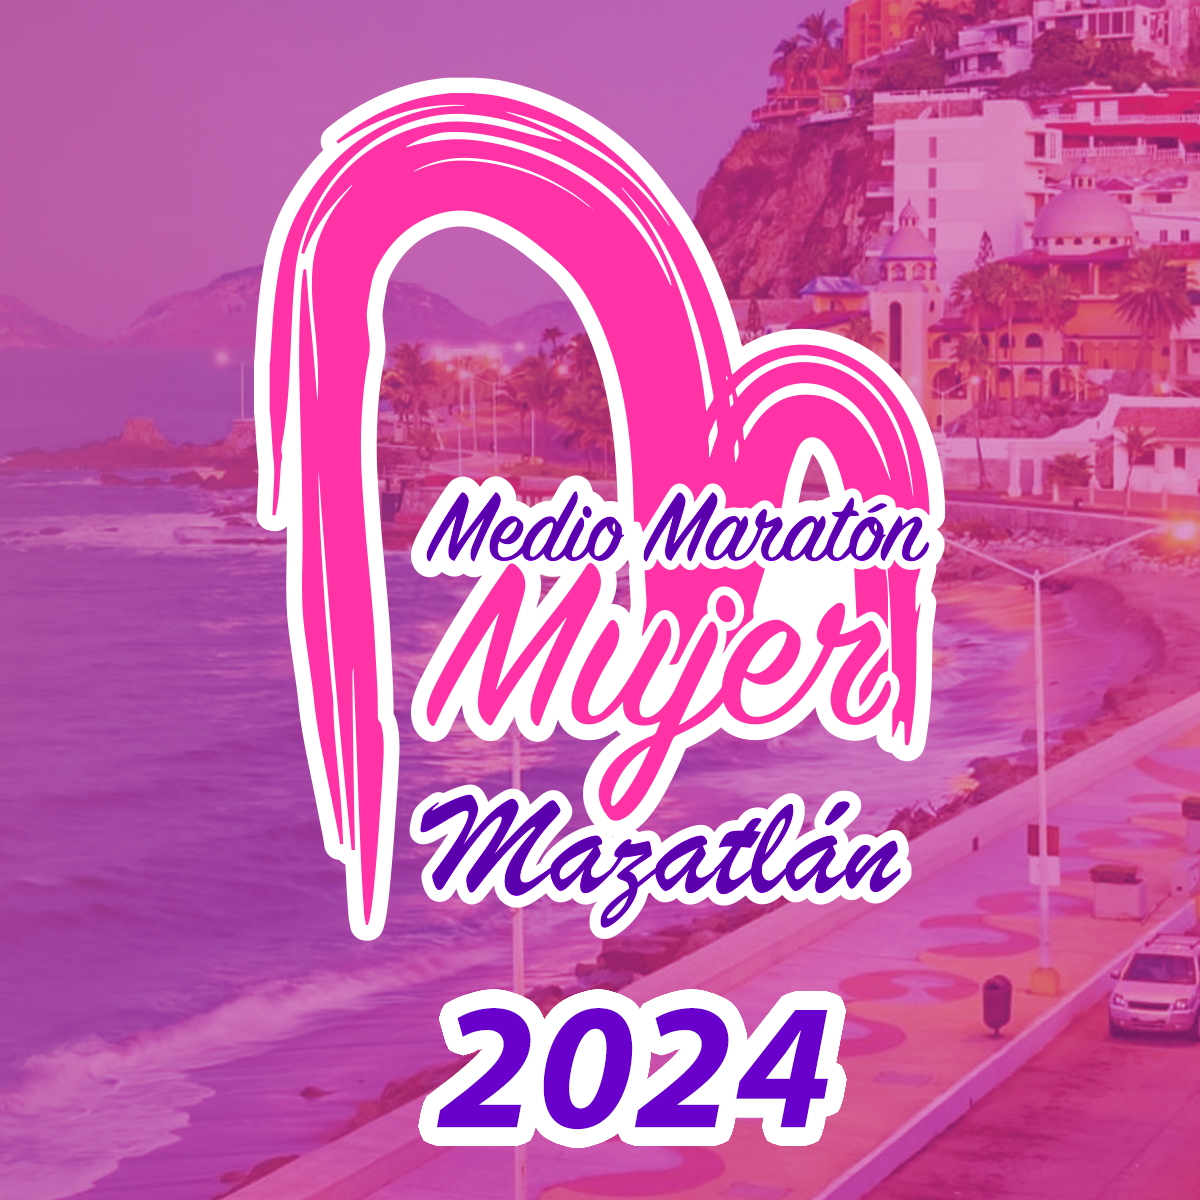 Medio Maratón Mujer Mazatlán 2024